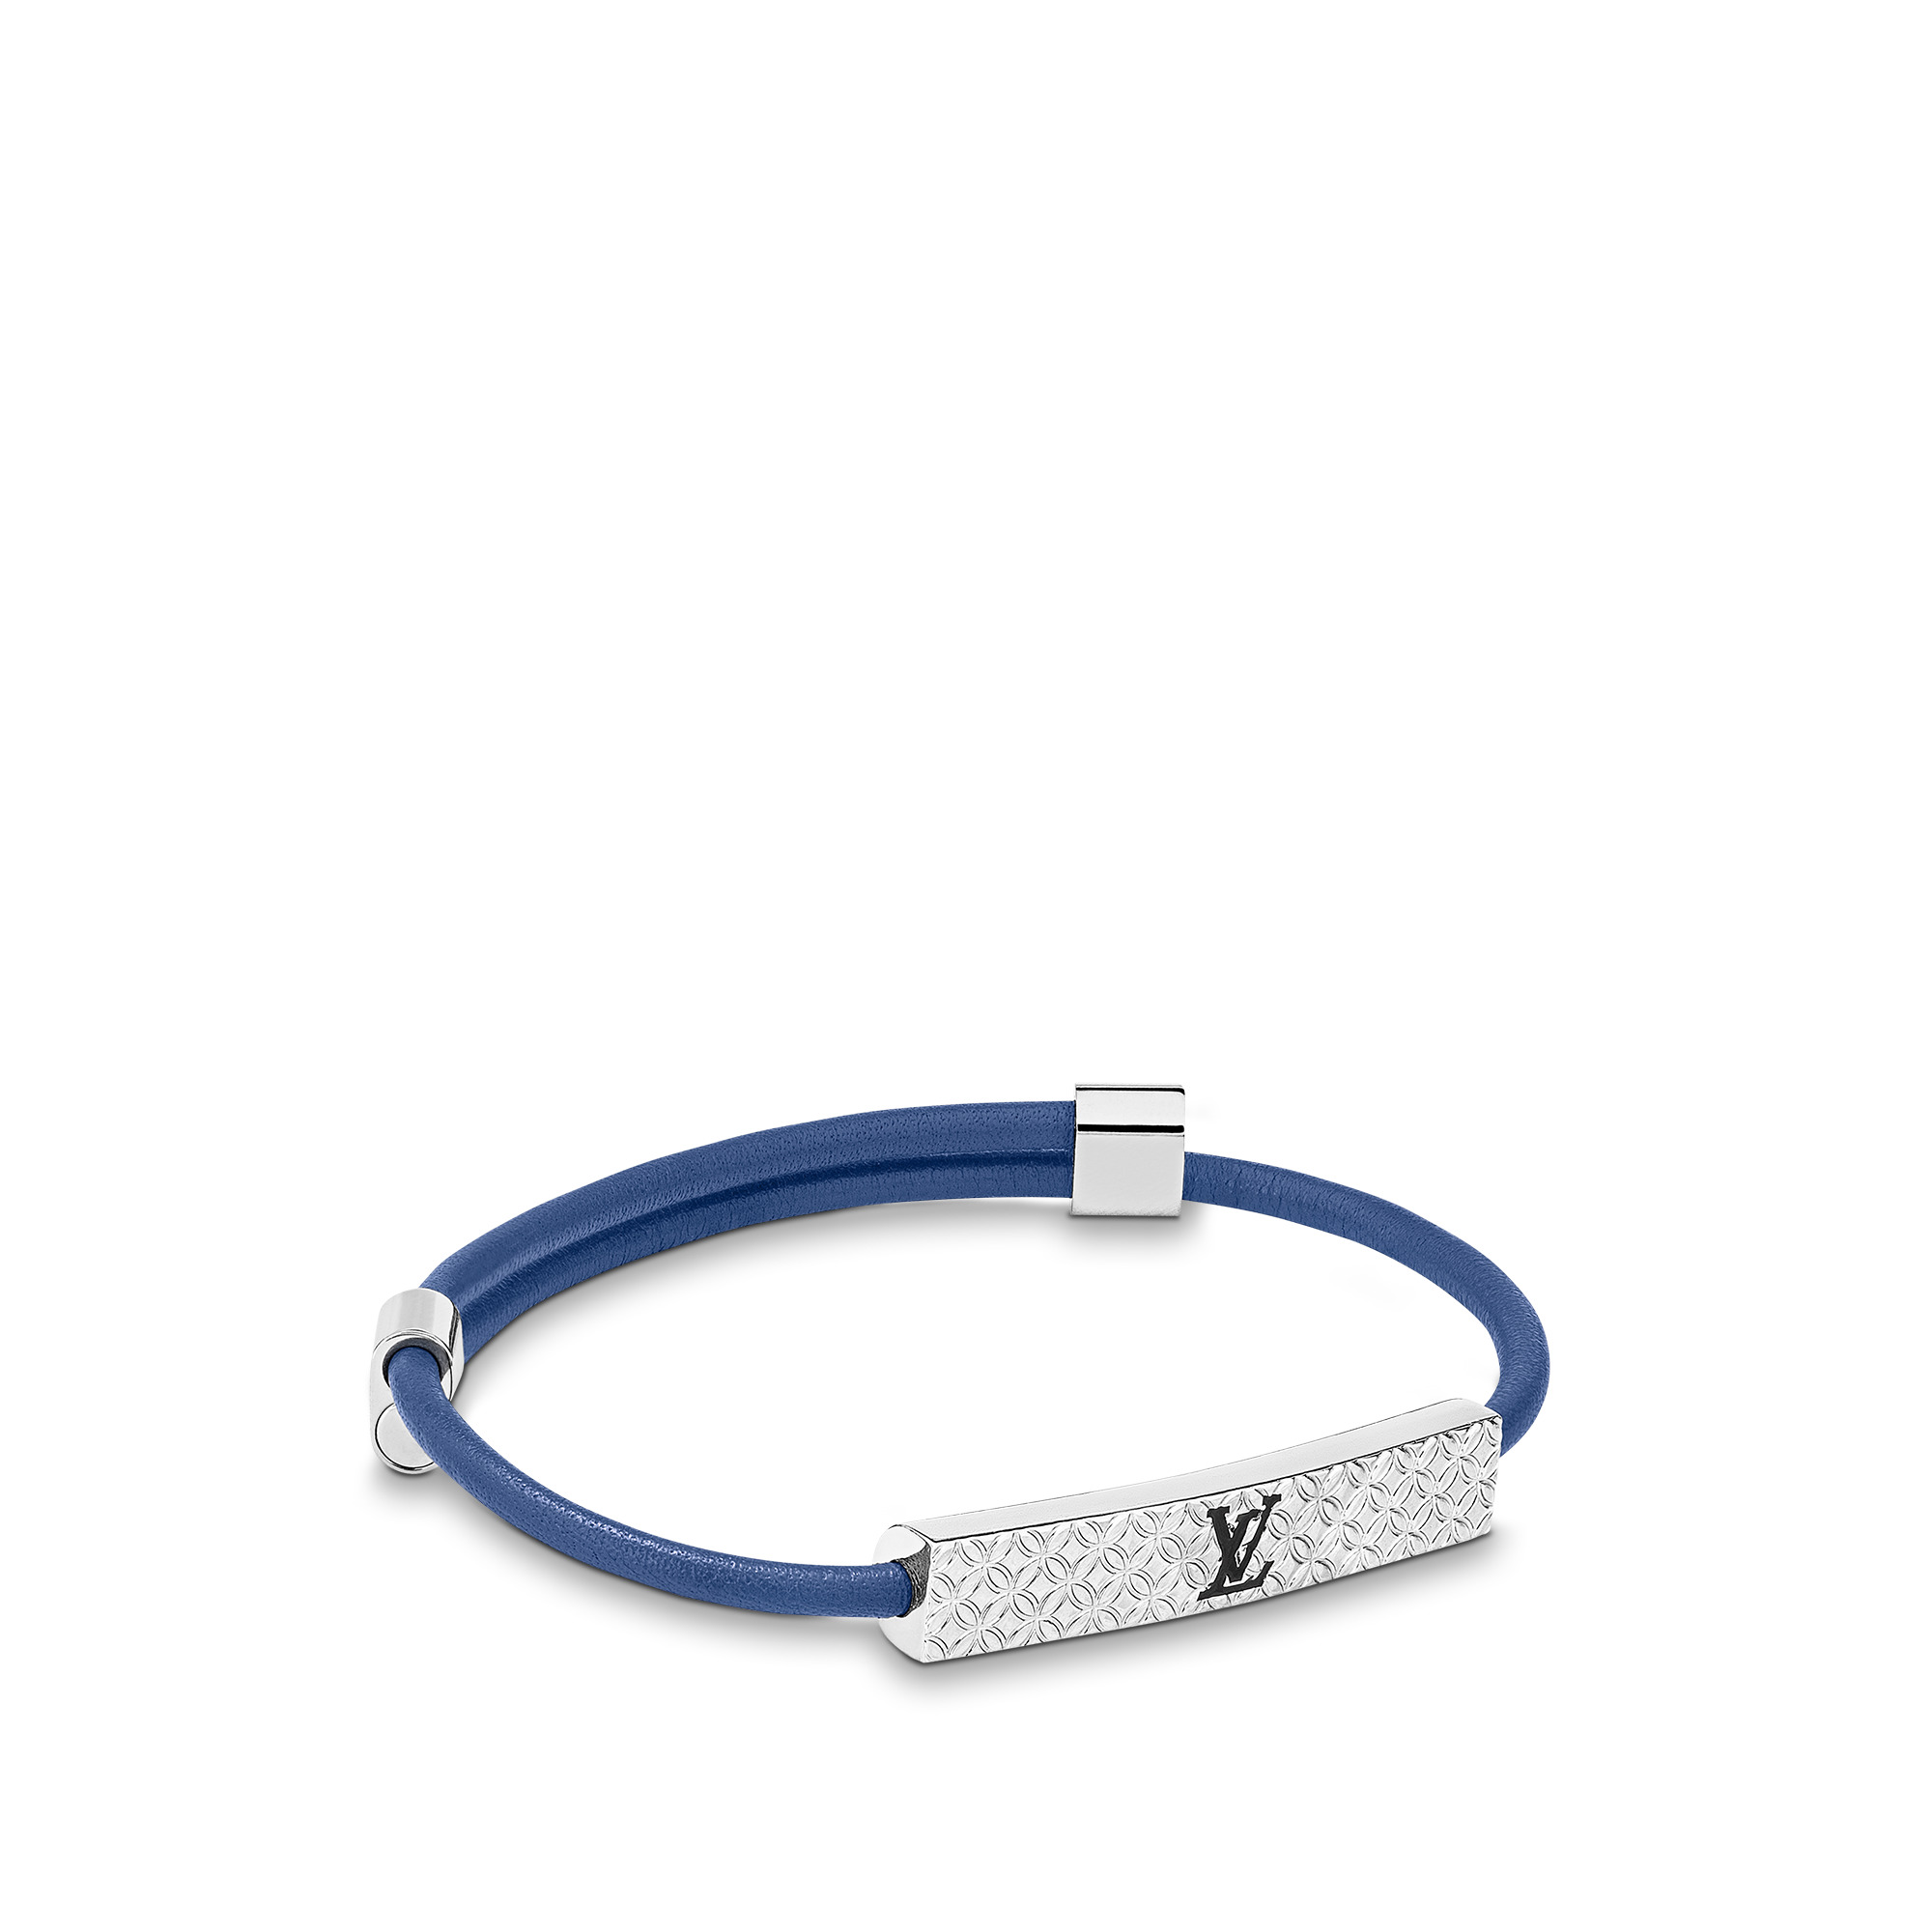 Louis Vuitton LV Instinct Enamelled Necklace Blue Metal